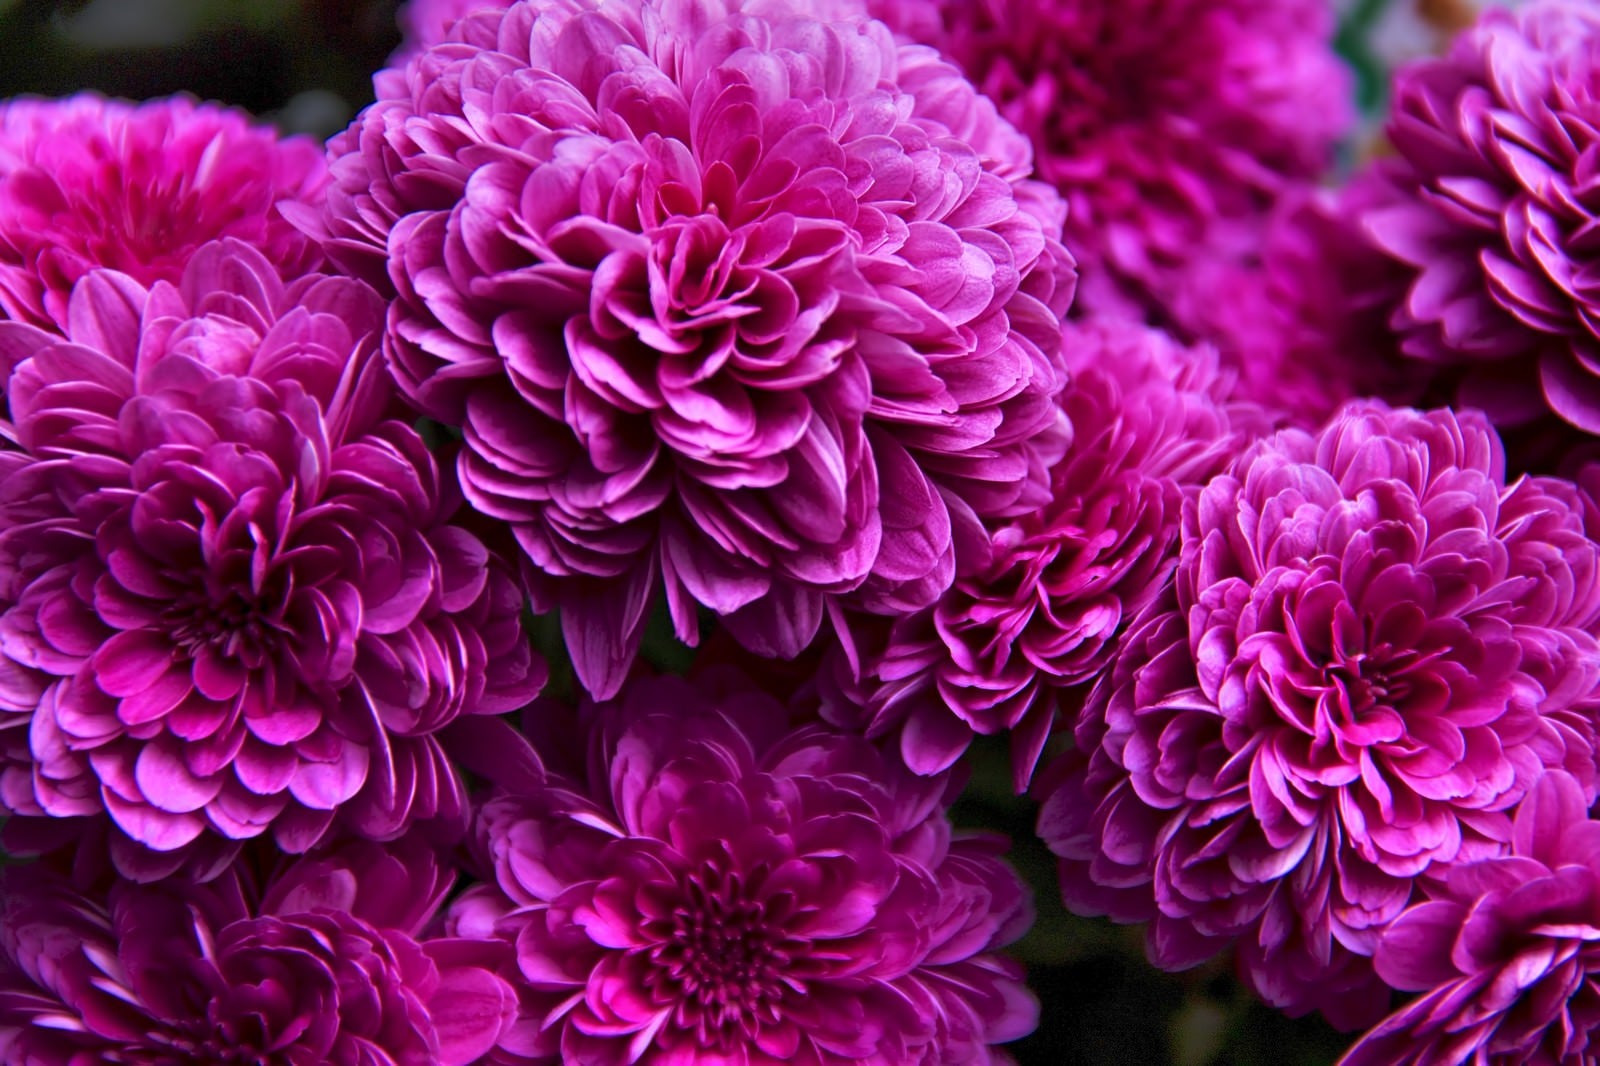 「ひしめき咲く紫の花」の写真